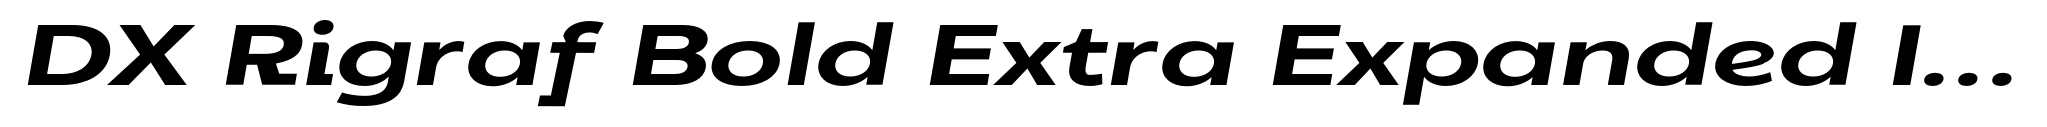 DX Rigraf Bold Extra Expanded Italic image